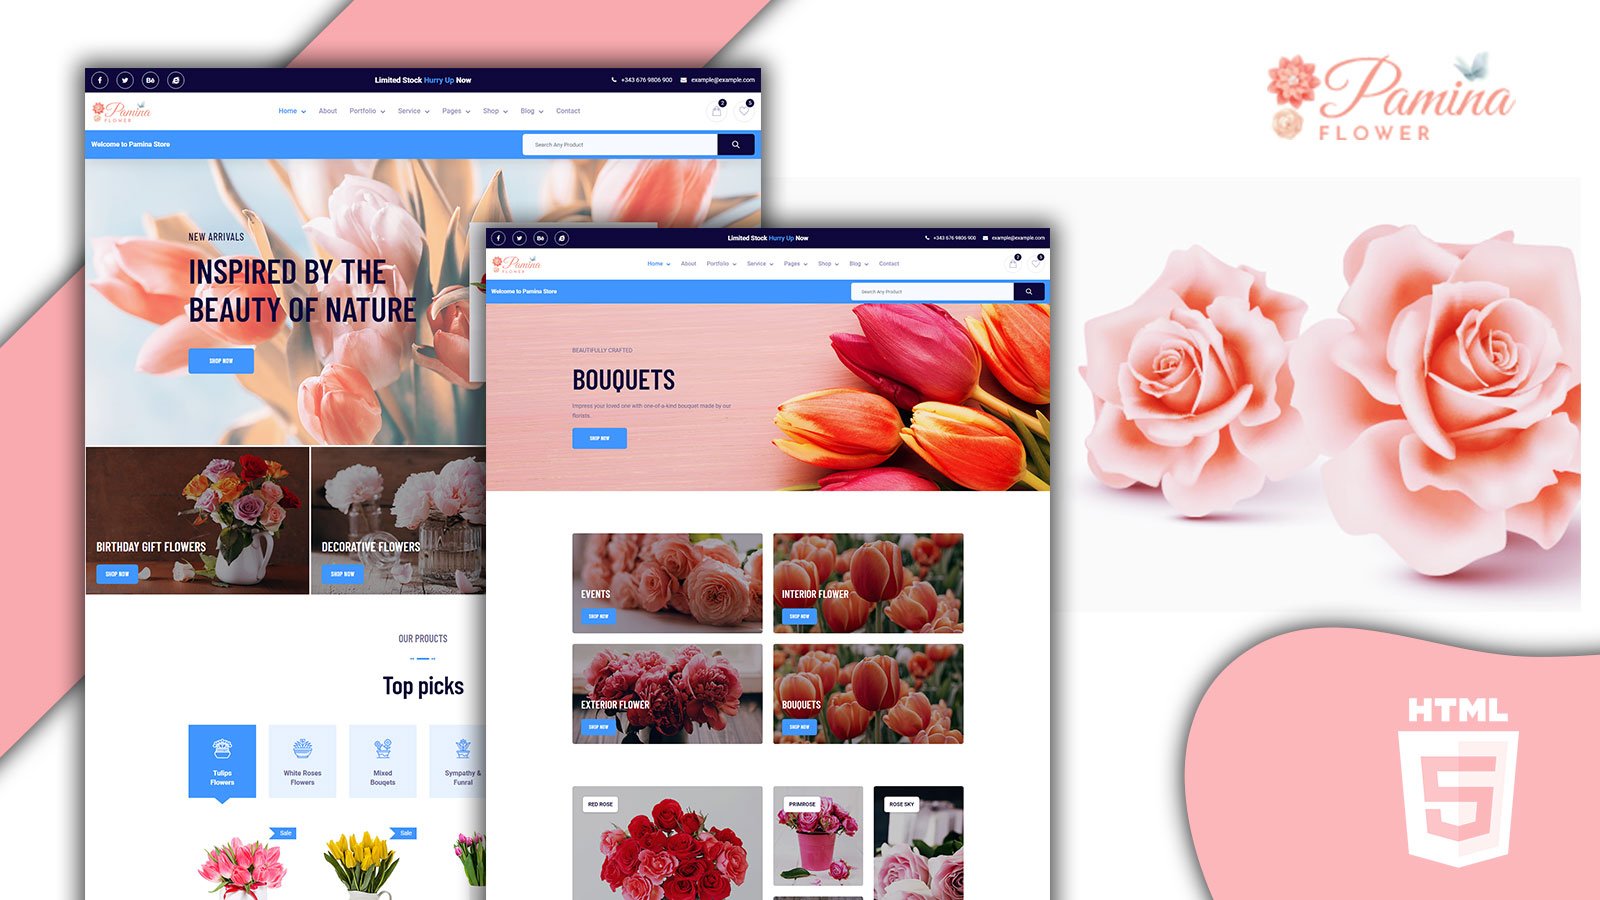 Pamina Swift Florist and Flower Shop HTML5 Website template